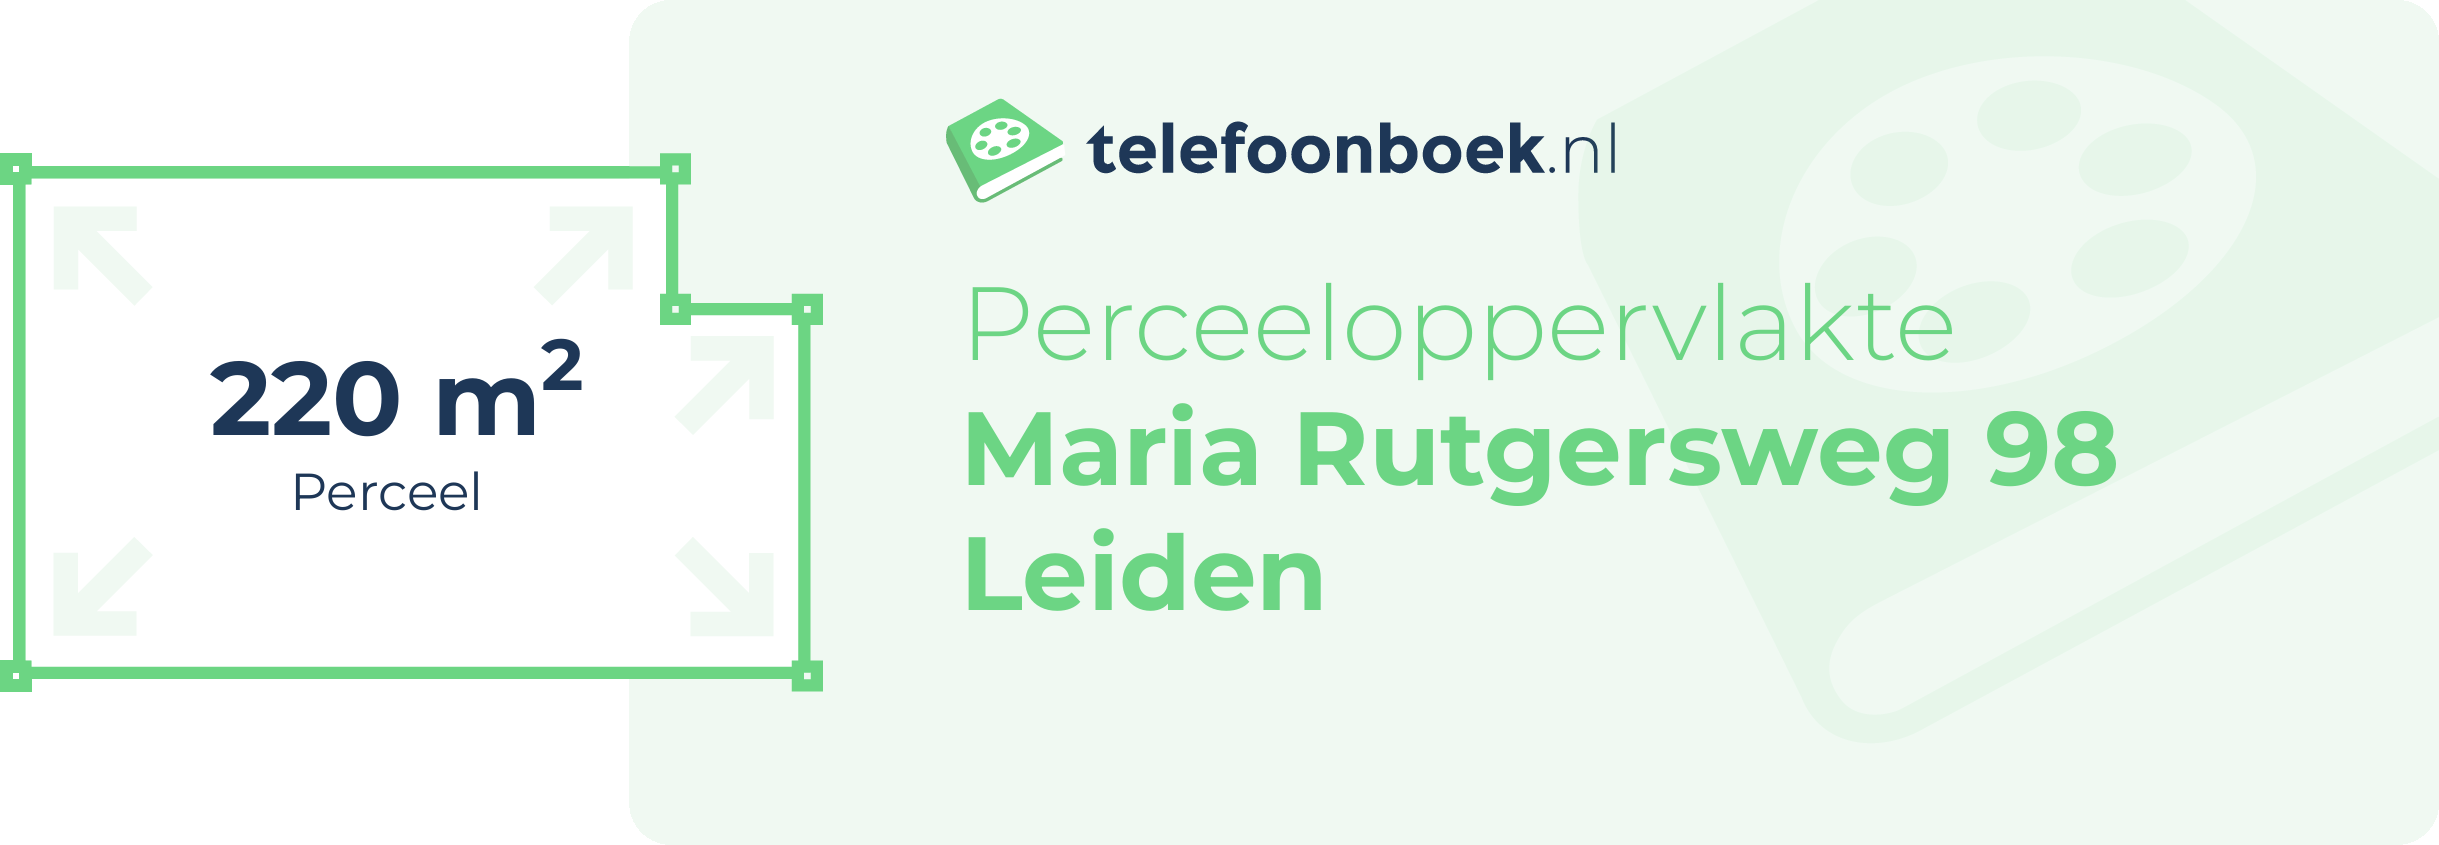 Perceeloppervlakte Maria Rutgersweg 98 Leiden